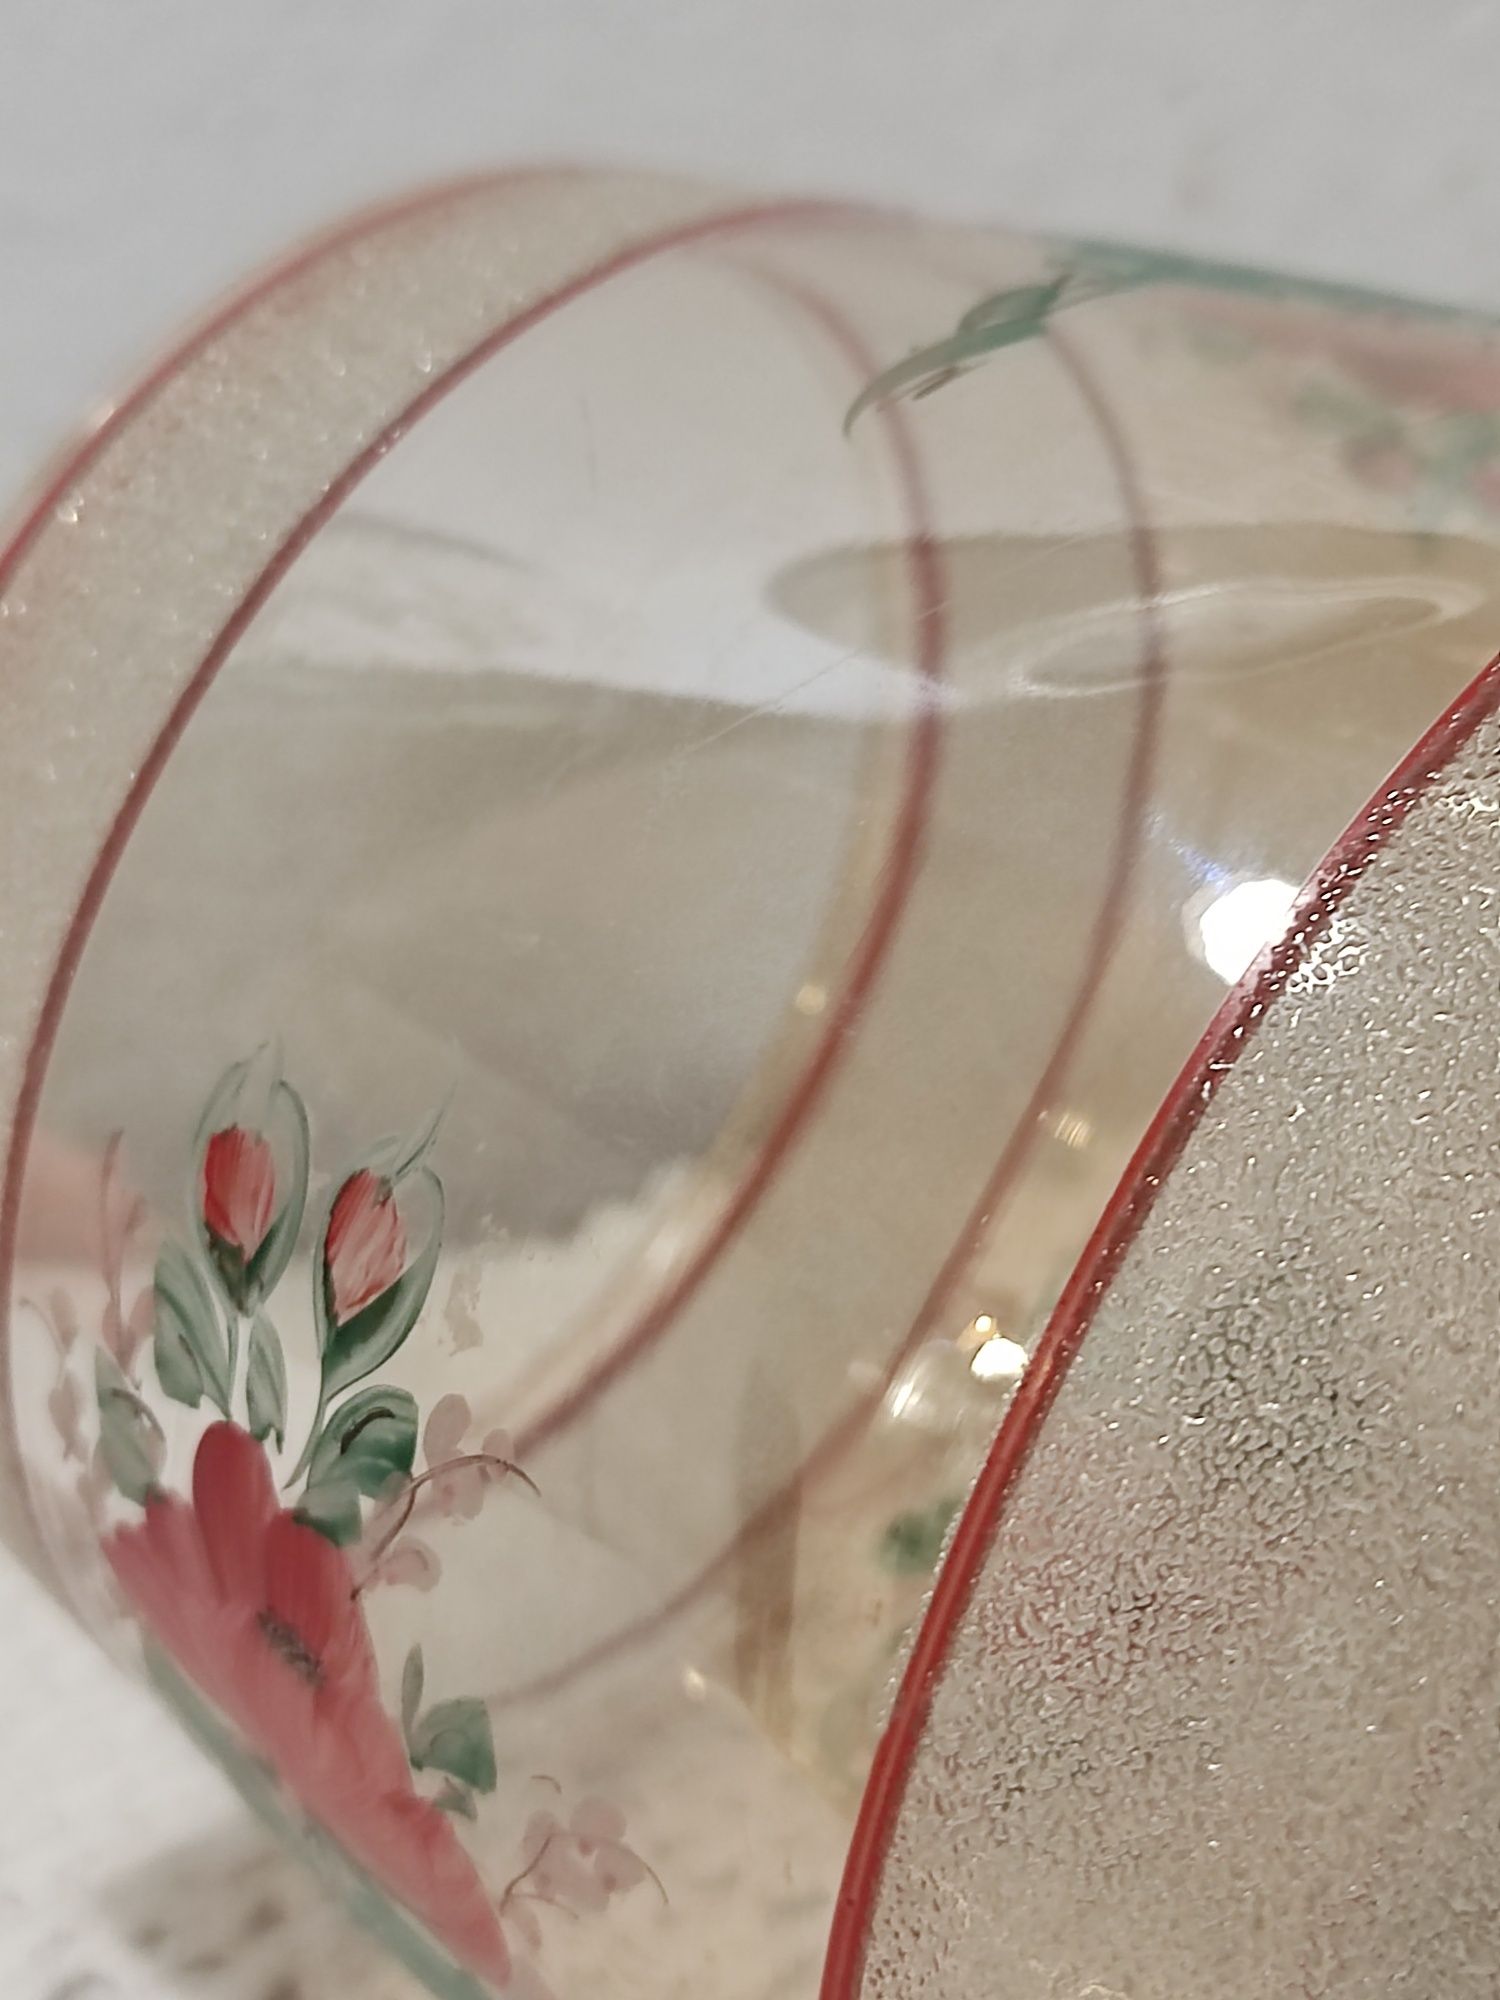 Vintage mały wazon, pucharek  w ręcznie malowane kwiaty